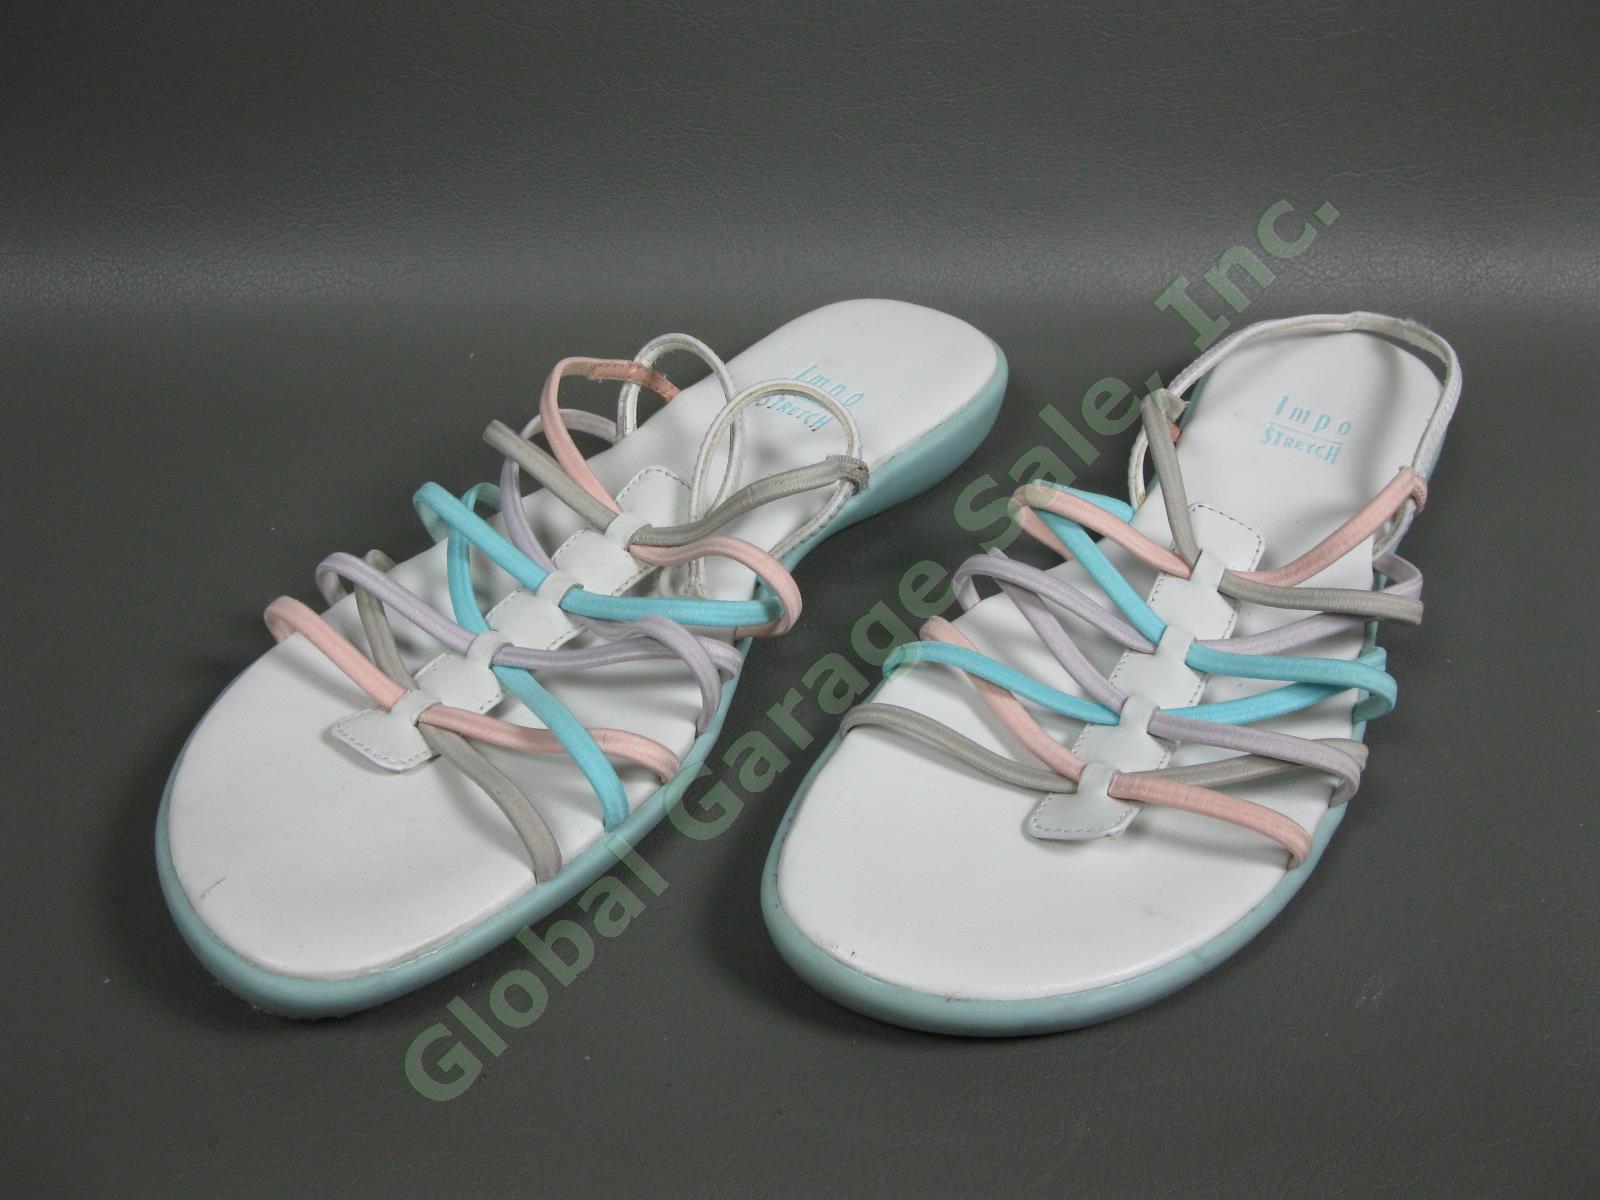 6 Pair Womens Walking Slip-In Sandal Size 8.5M-9M Shoe Lot Naturalizer Ryka Impo 3